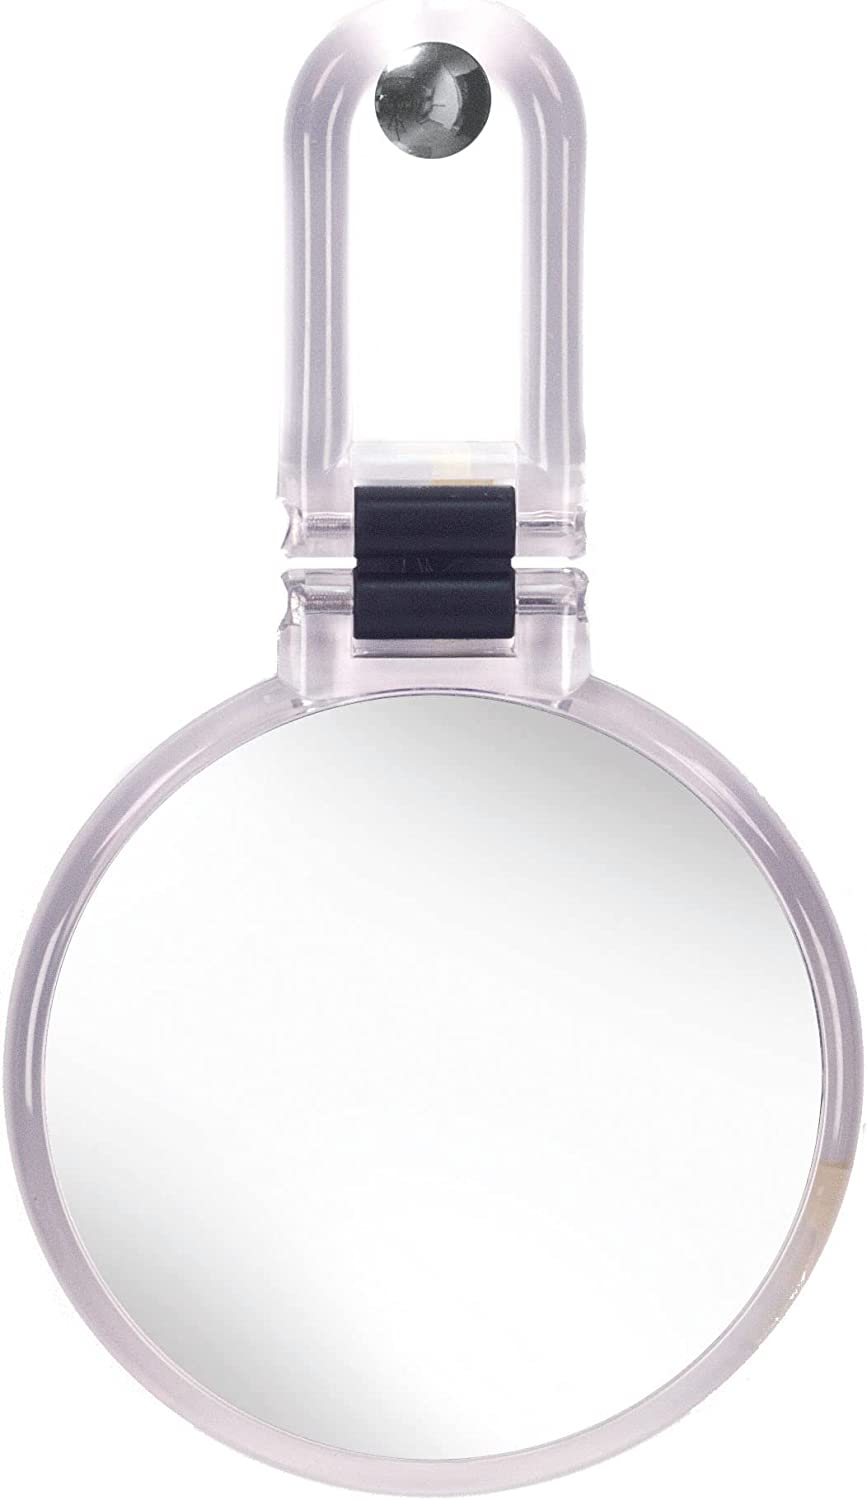 Kosmetikspiegel Multi Mirror, mit 5-facher Vergrößerung, Größe: 14 x 24,5 x 1,2 cm, Material: Polystyrol/Glas